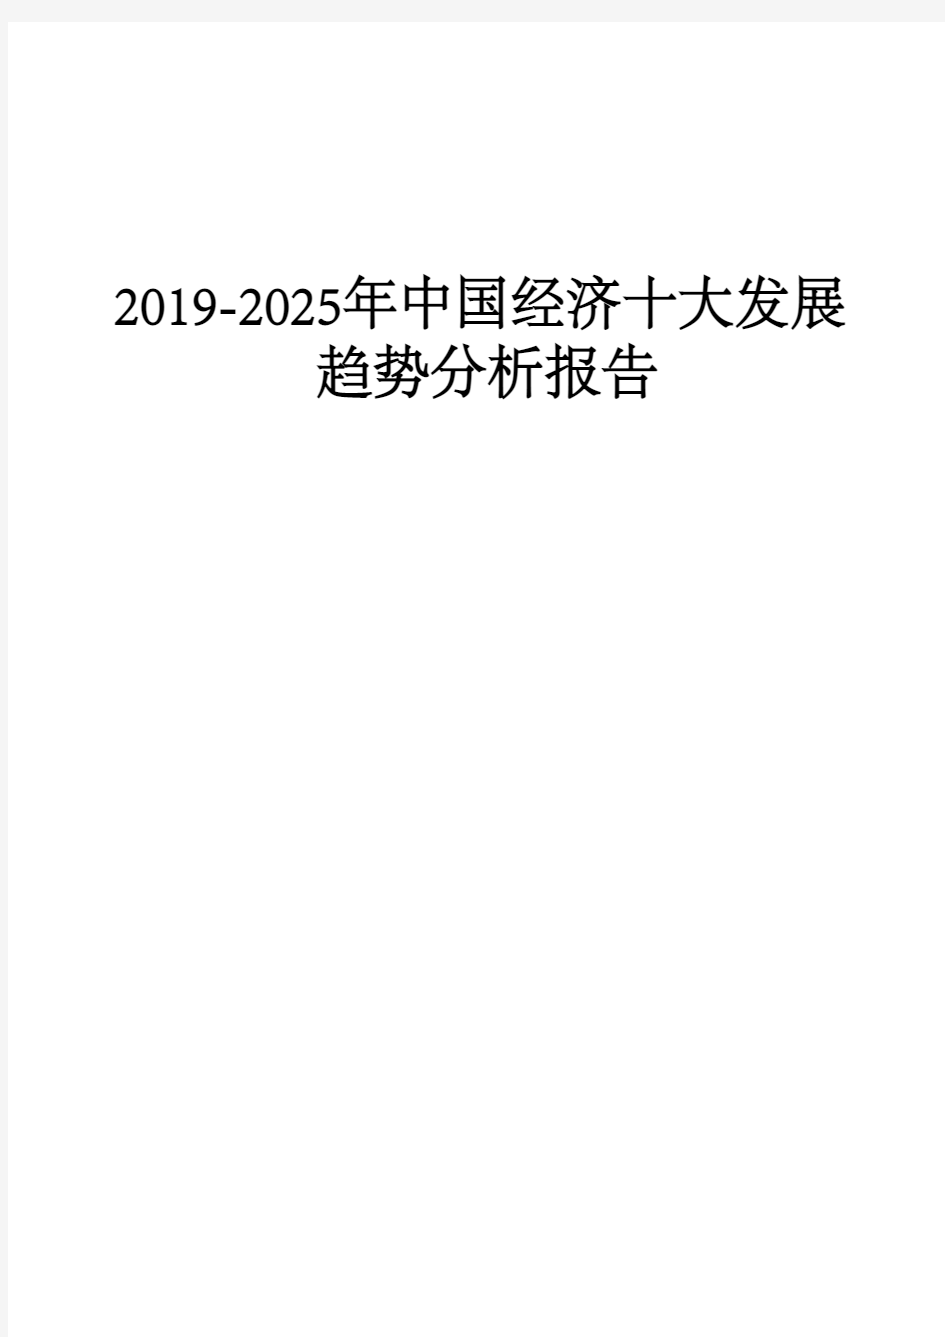 2019-2025年中国经济十大发展趋势分析报告